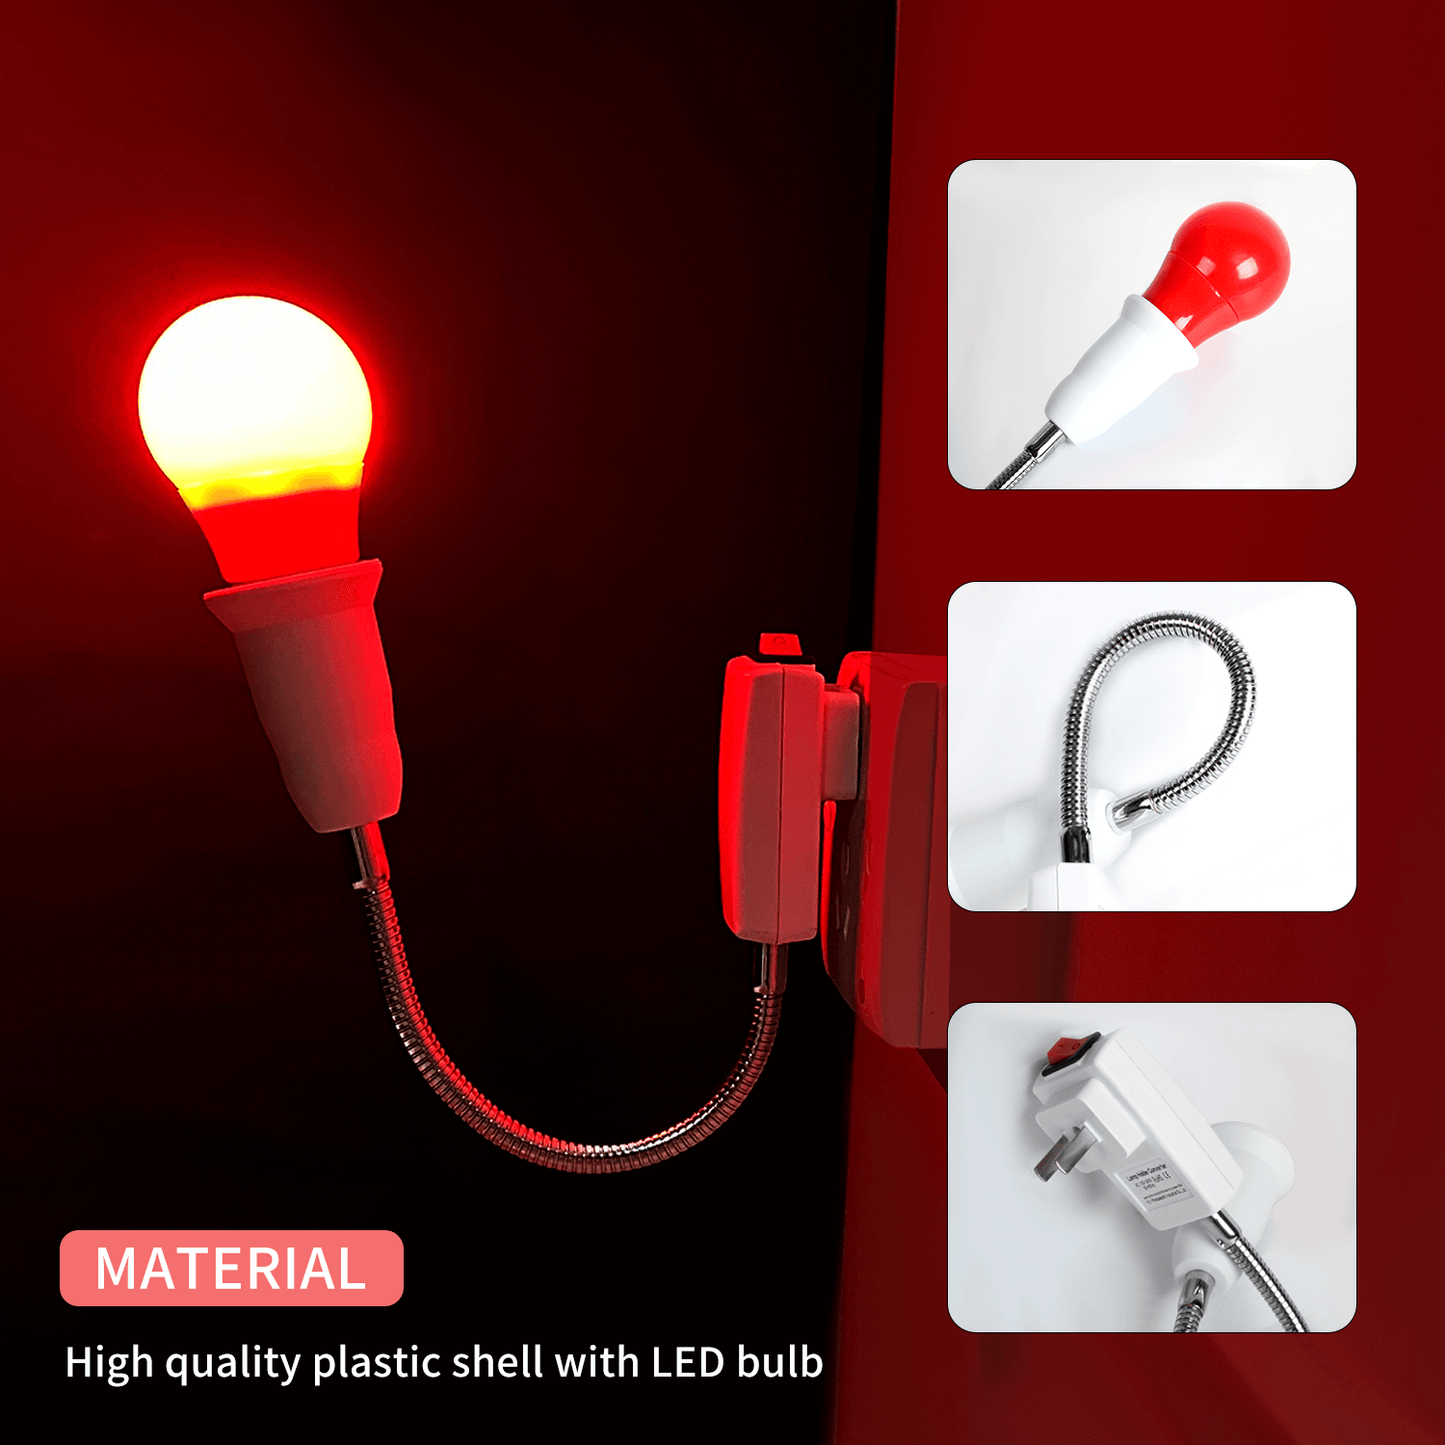 Darkroom Safelight Lampadina Lampada LED E27 Spina di alimentazione Pellicola medica Stampa fotografica Sviluppo negativo